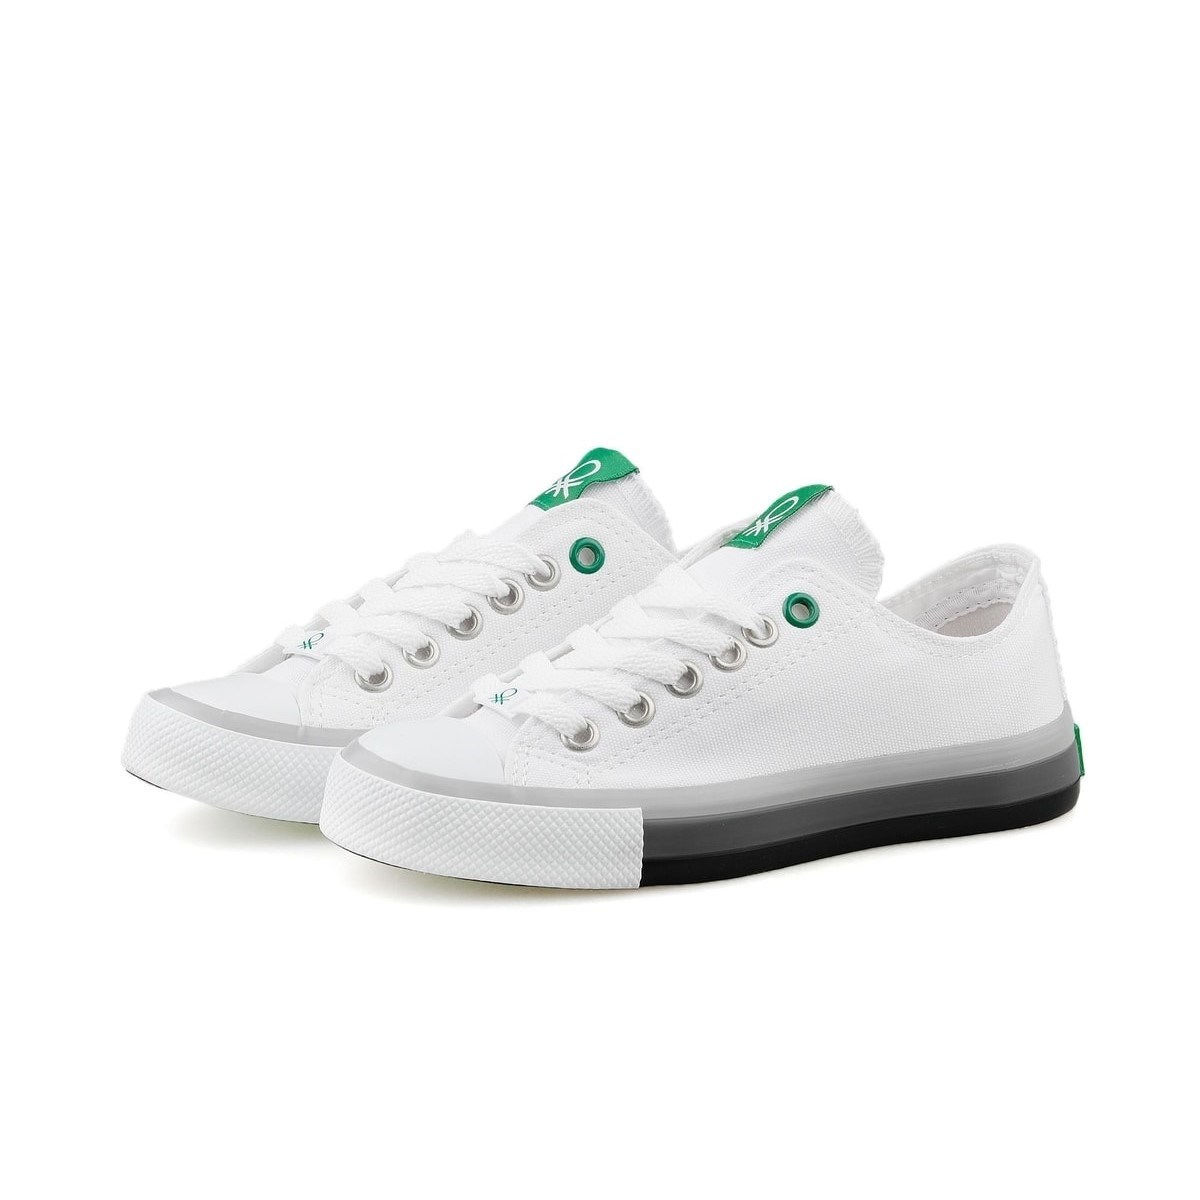 Benetton Kadın Ayakkabı BN-30176 207-Beyaz-Siyah